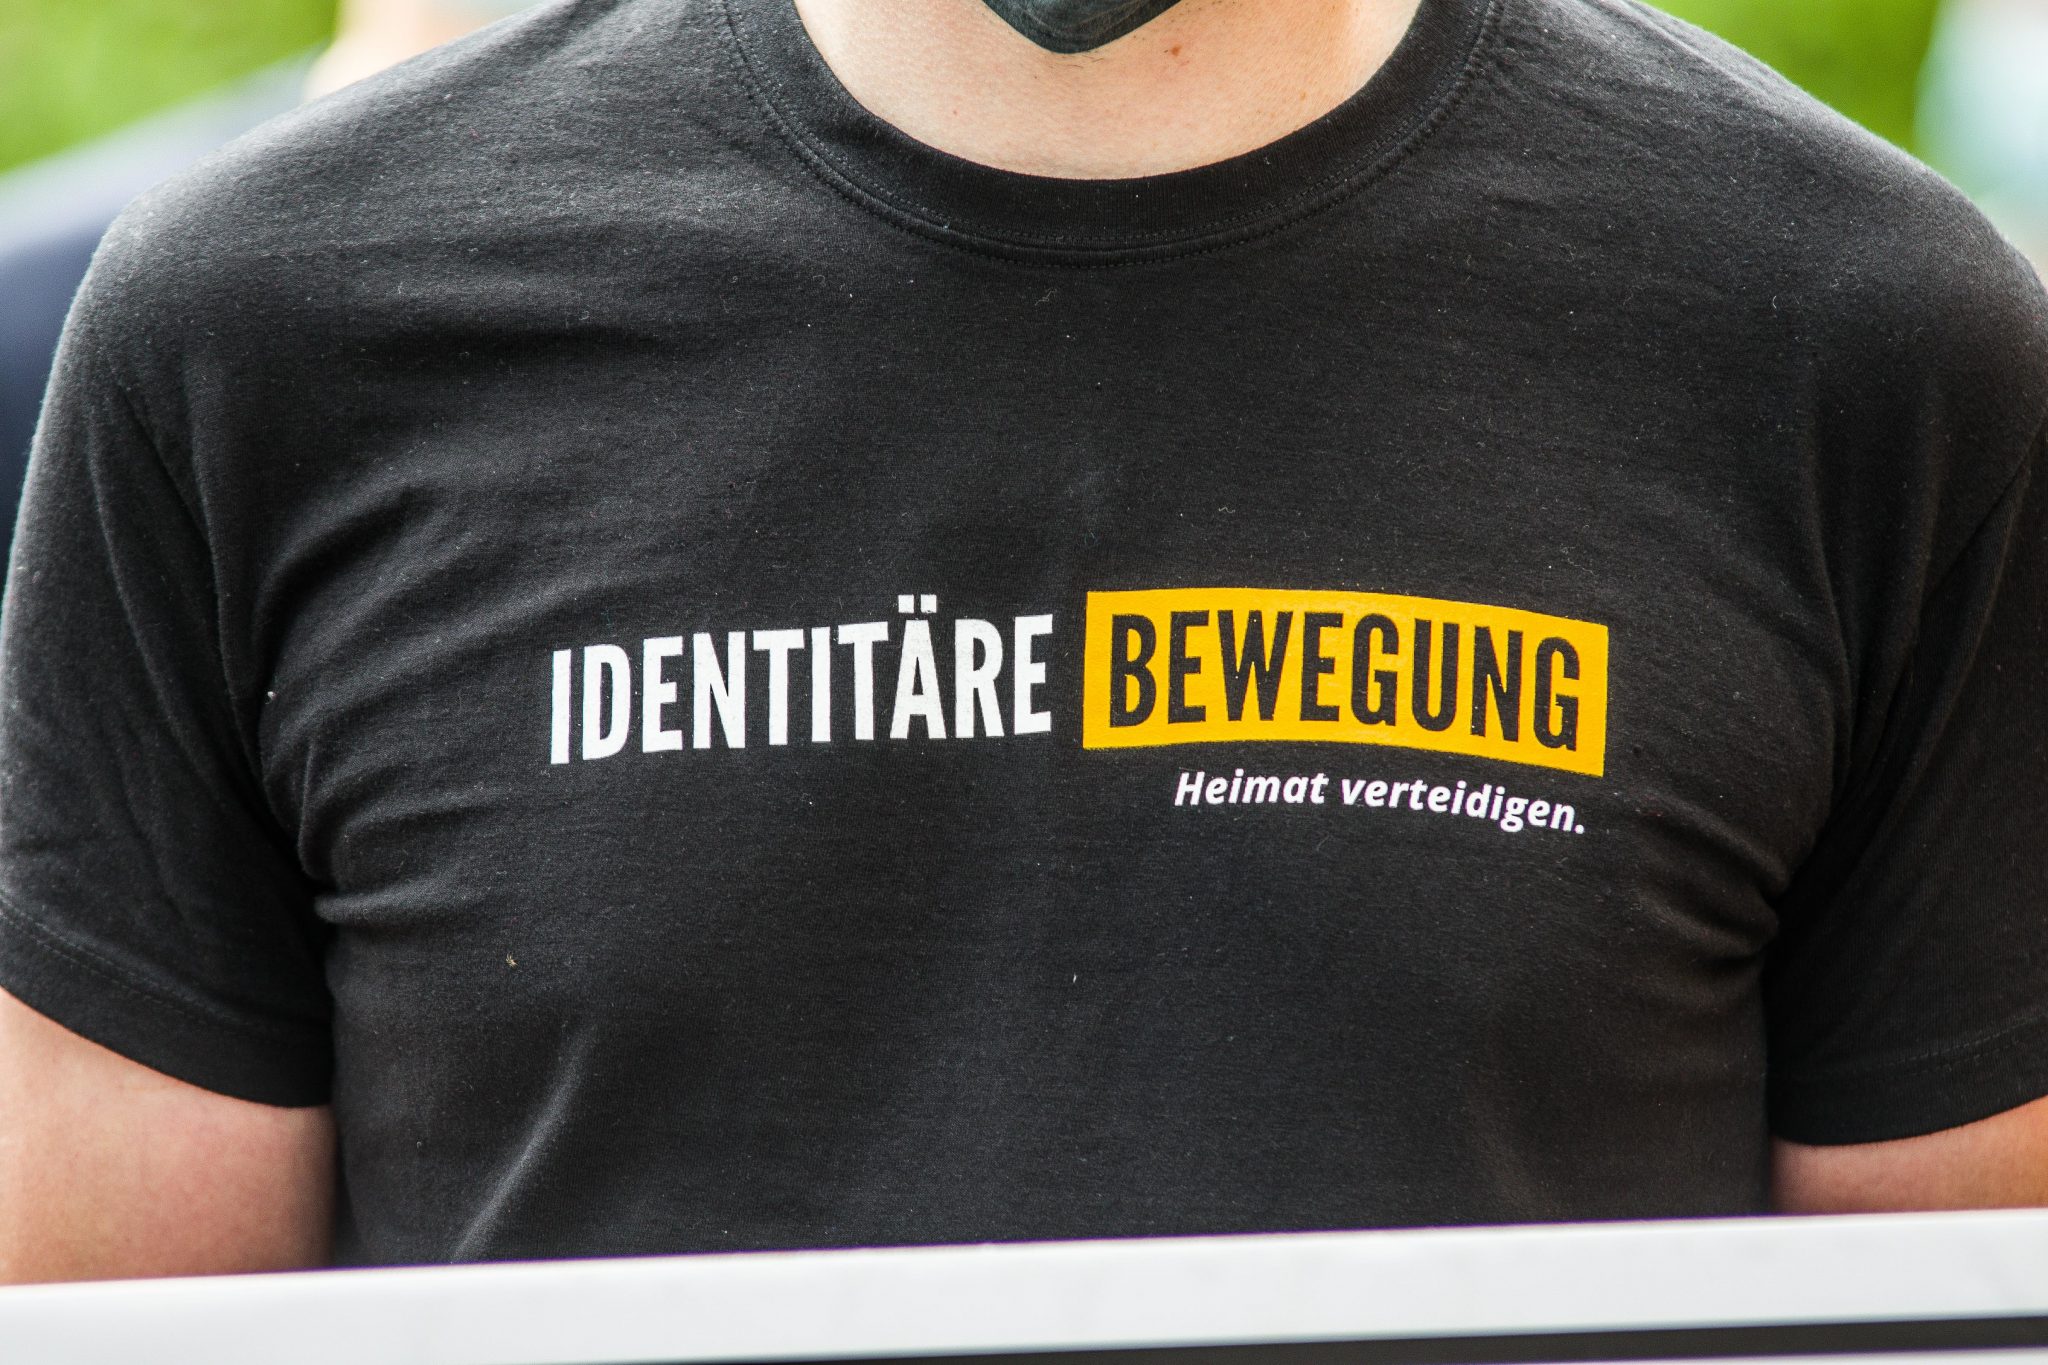 Identitäre Bewegung: Geht mit zwei Klagen gegen Verfassungsschutz vor Foto:picture alliance/ZUMA Press